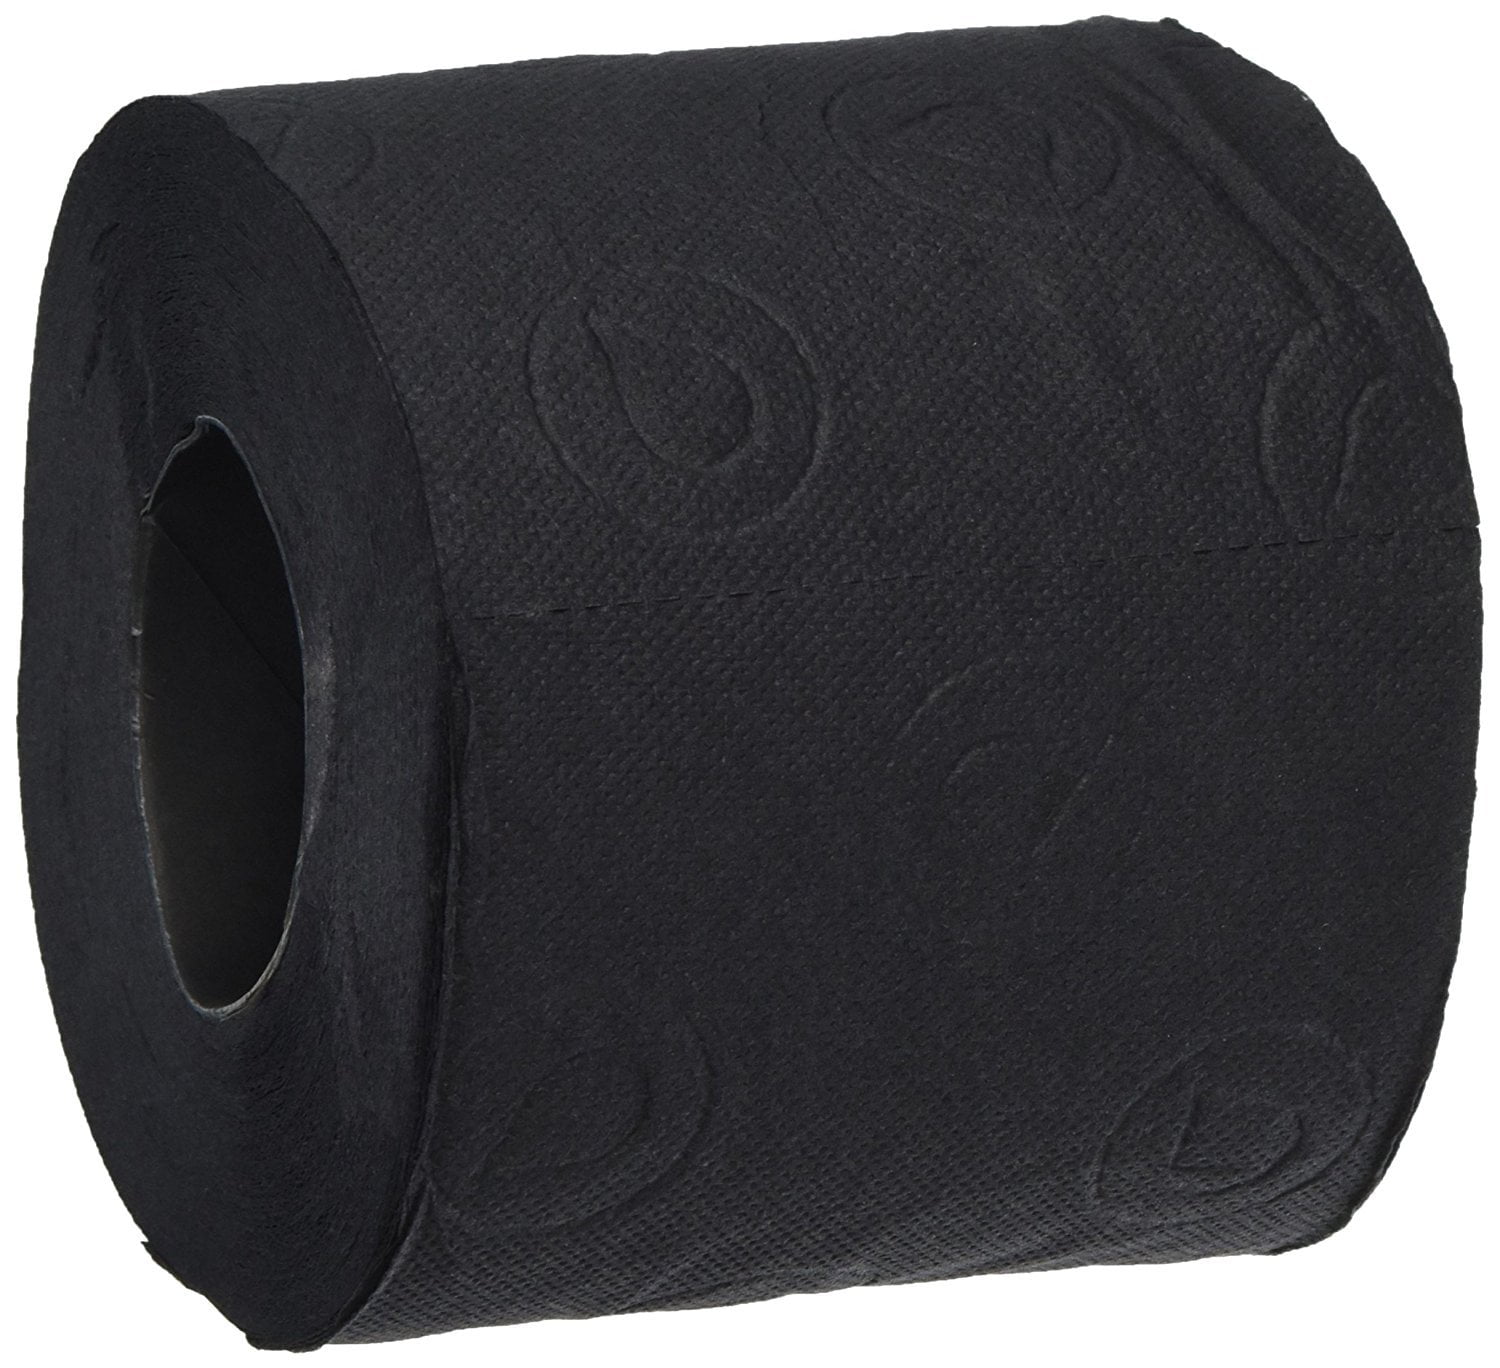 Черная туалетная бумага купить. Черная туалетная бумага. Туалетная бумага черного цвета. Чёрная туолетная бумага. Черная туалетная бумага элитная.